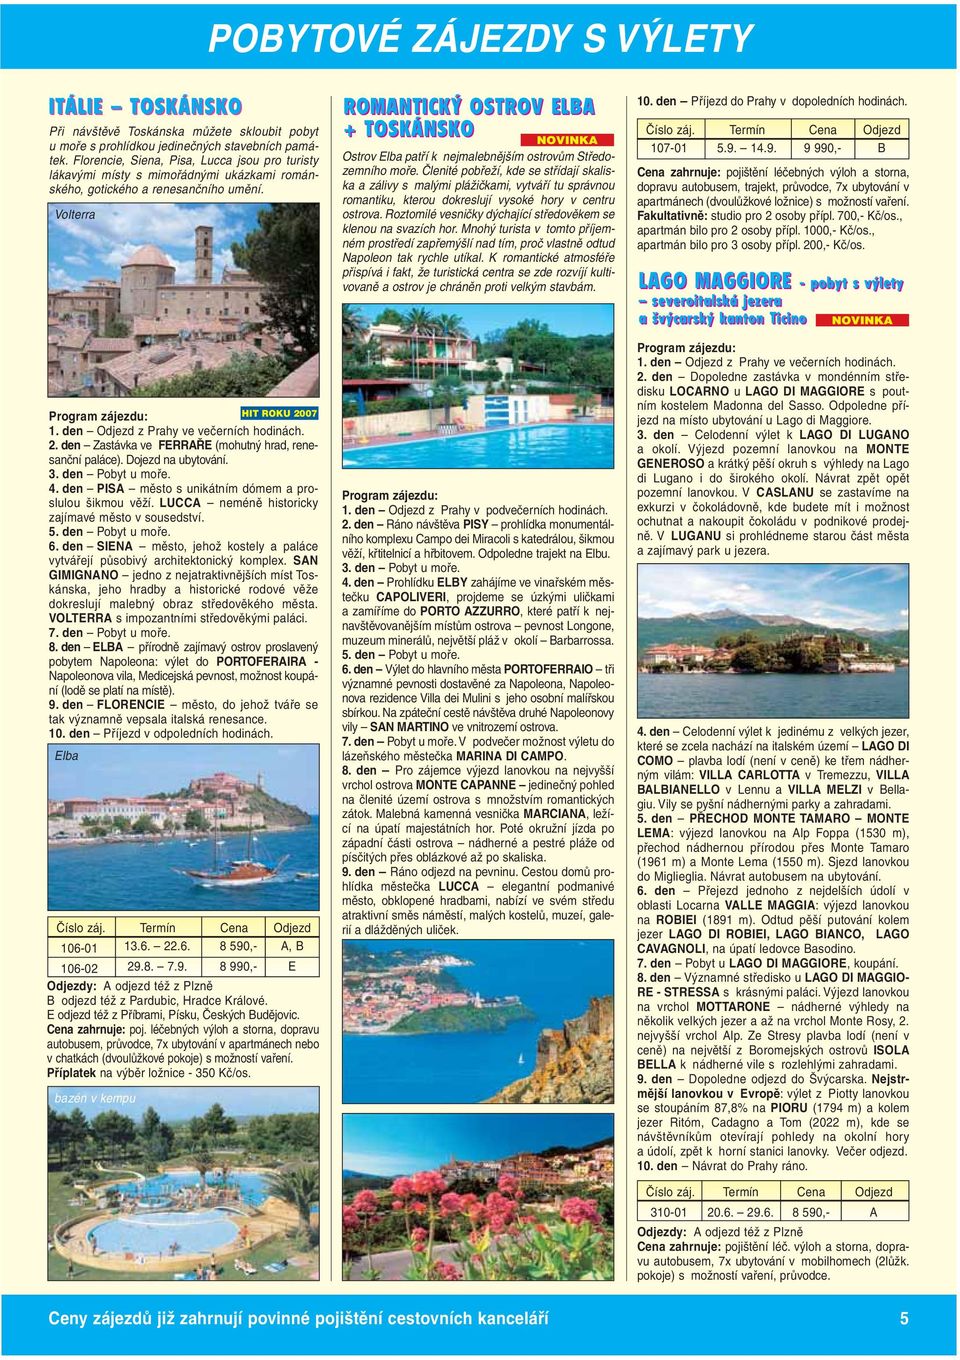 Volterra ROMANTICKÝ OSTROV ELBA + TOSKÁNSKO Ostrov Elba patří k nejmalebnějším ostrovům Středozemního moře.